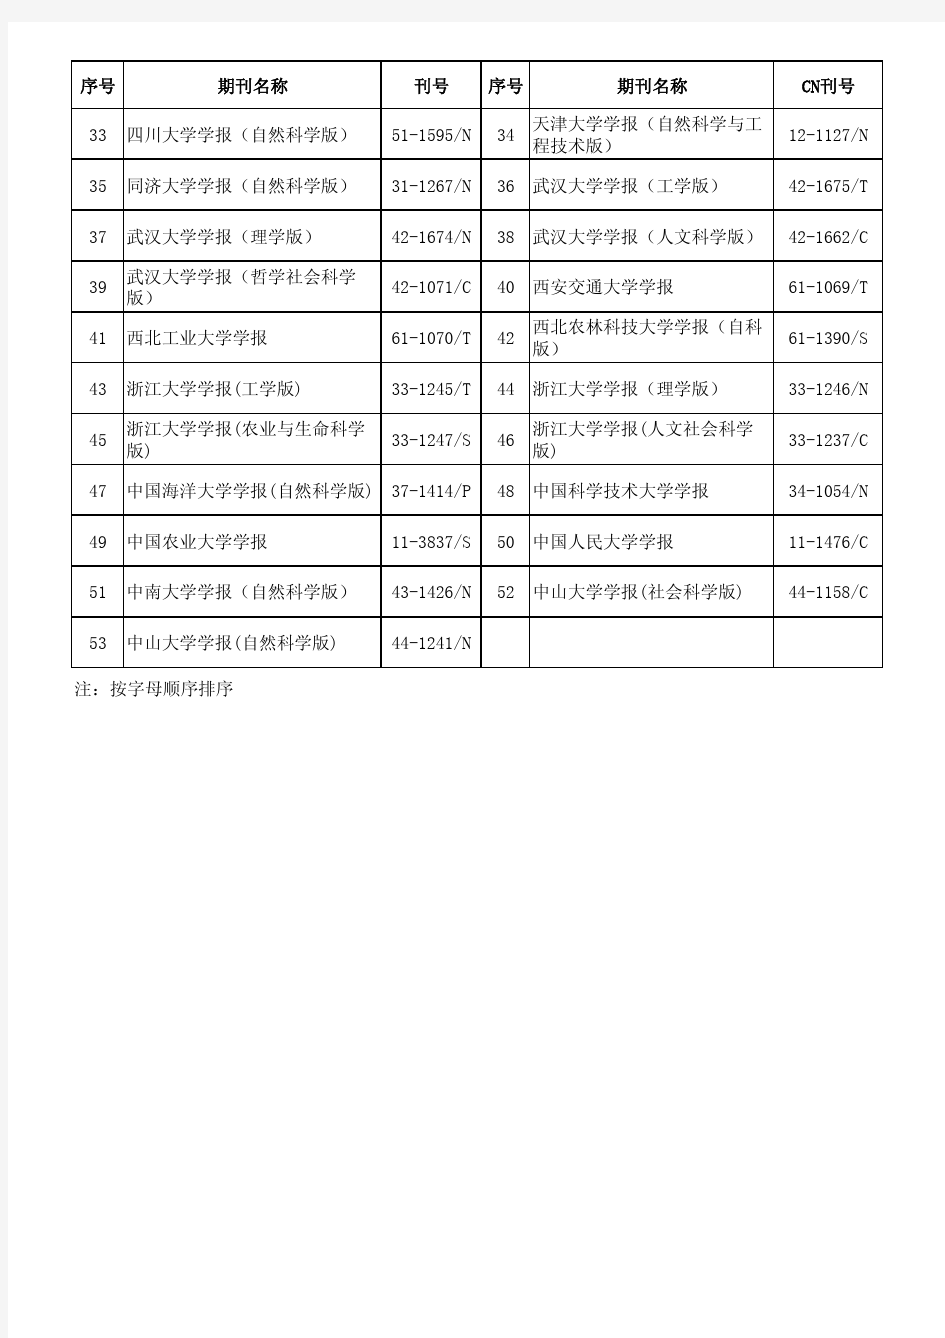 福建农林大学权威期刊目录(2014年版)